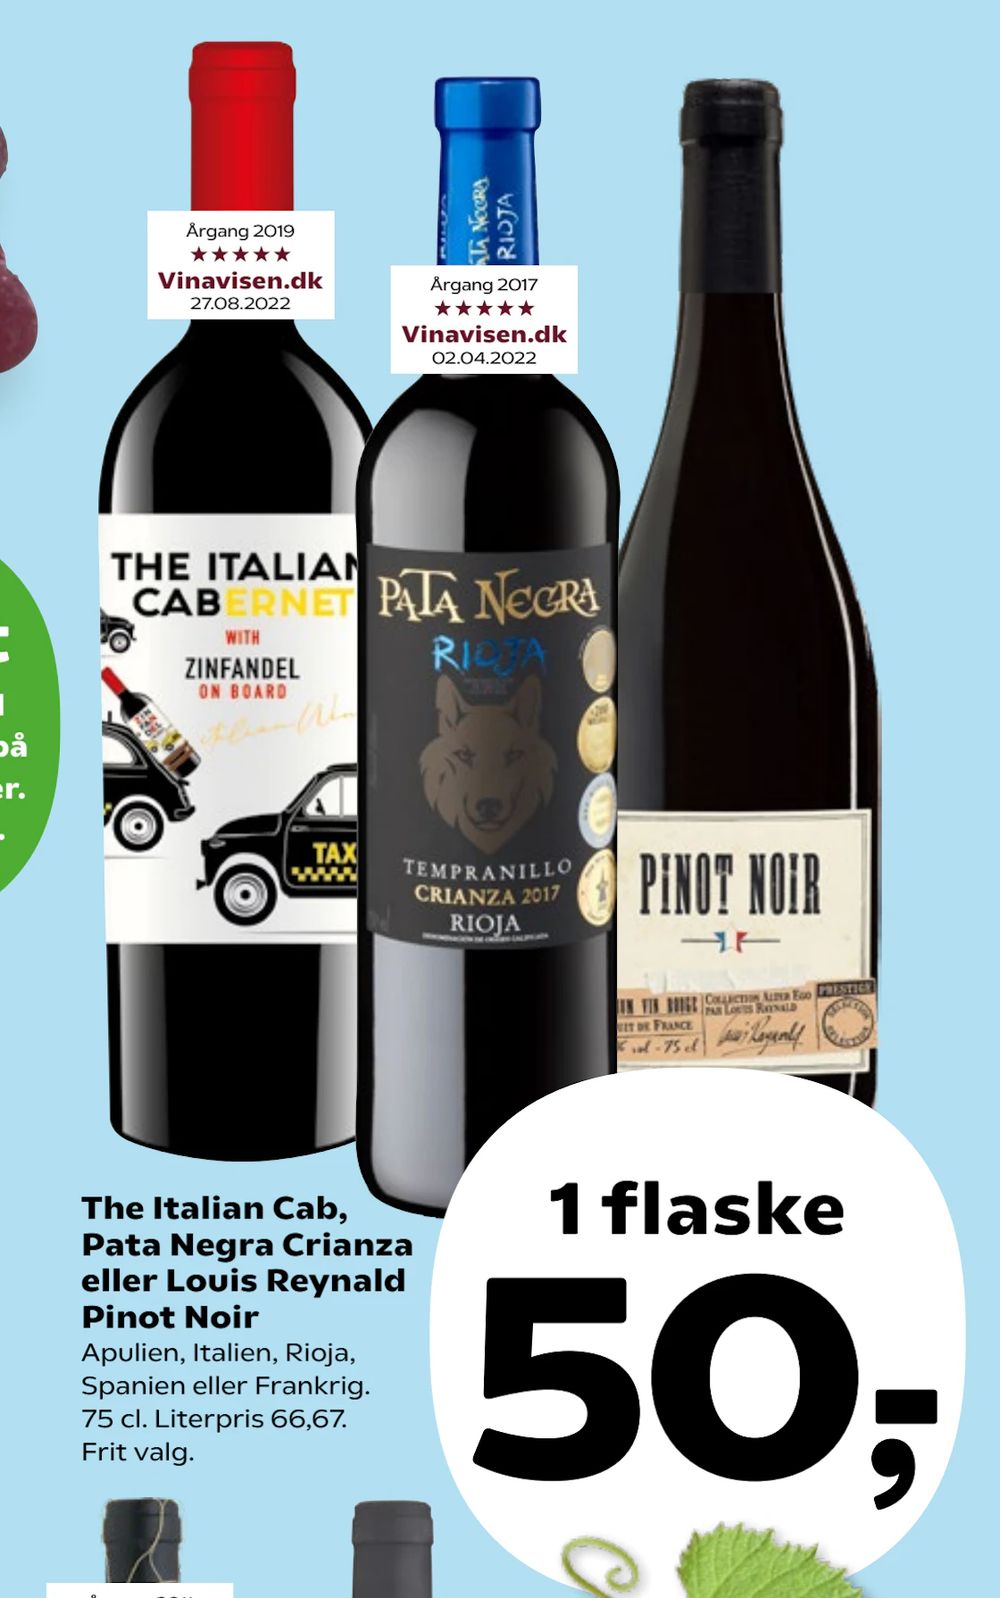 Tilbud på The Italian Cab, Pata Negra Crianza eller Louis Reynald Pinot Noir fra Kvickly til 50 kr.